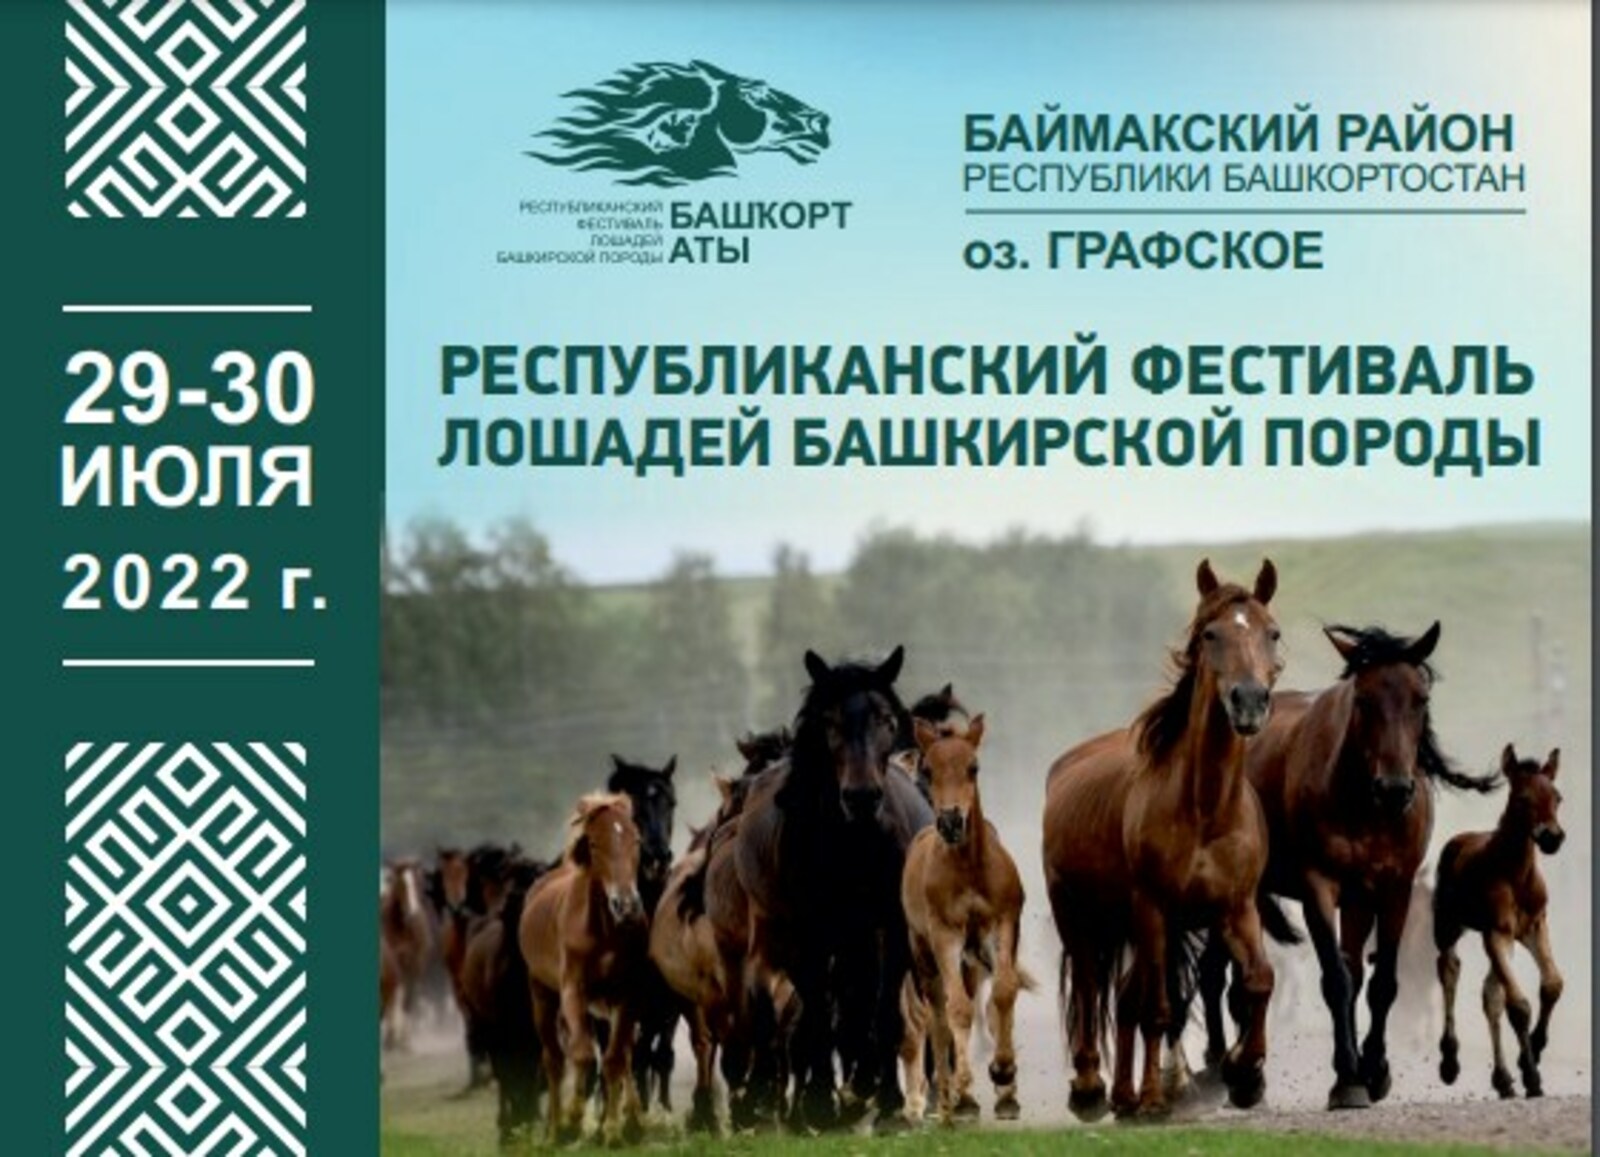 С 29 по 30 июля в республике состоится фестиваль лошадей башкирской породы «Башҡорт аты»